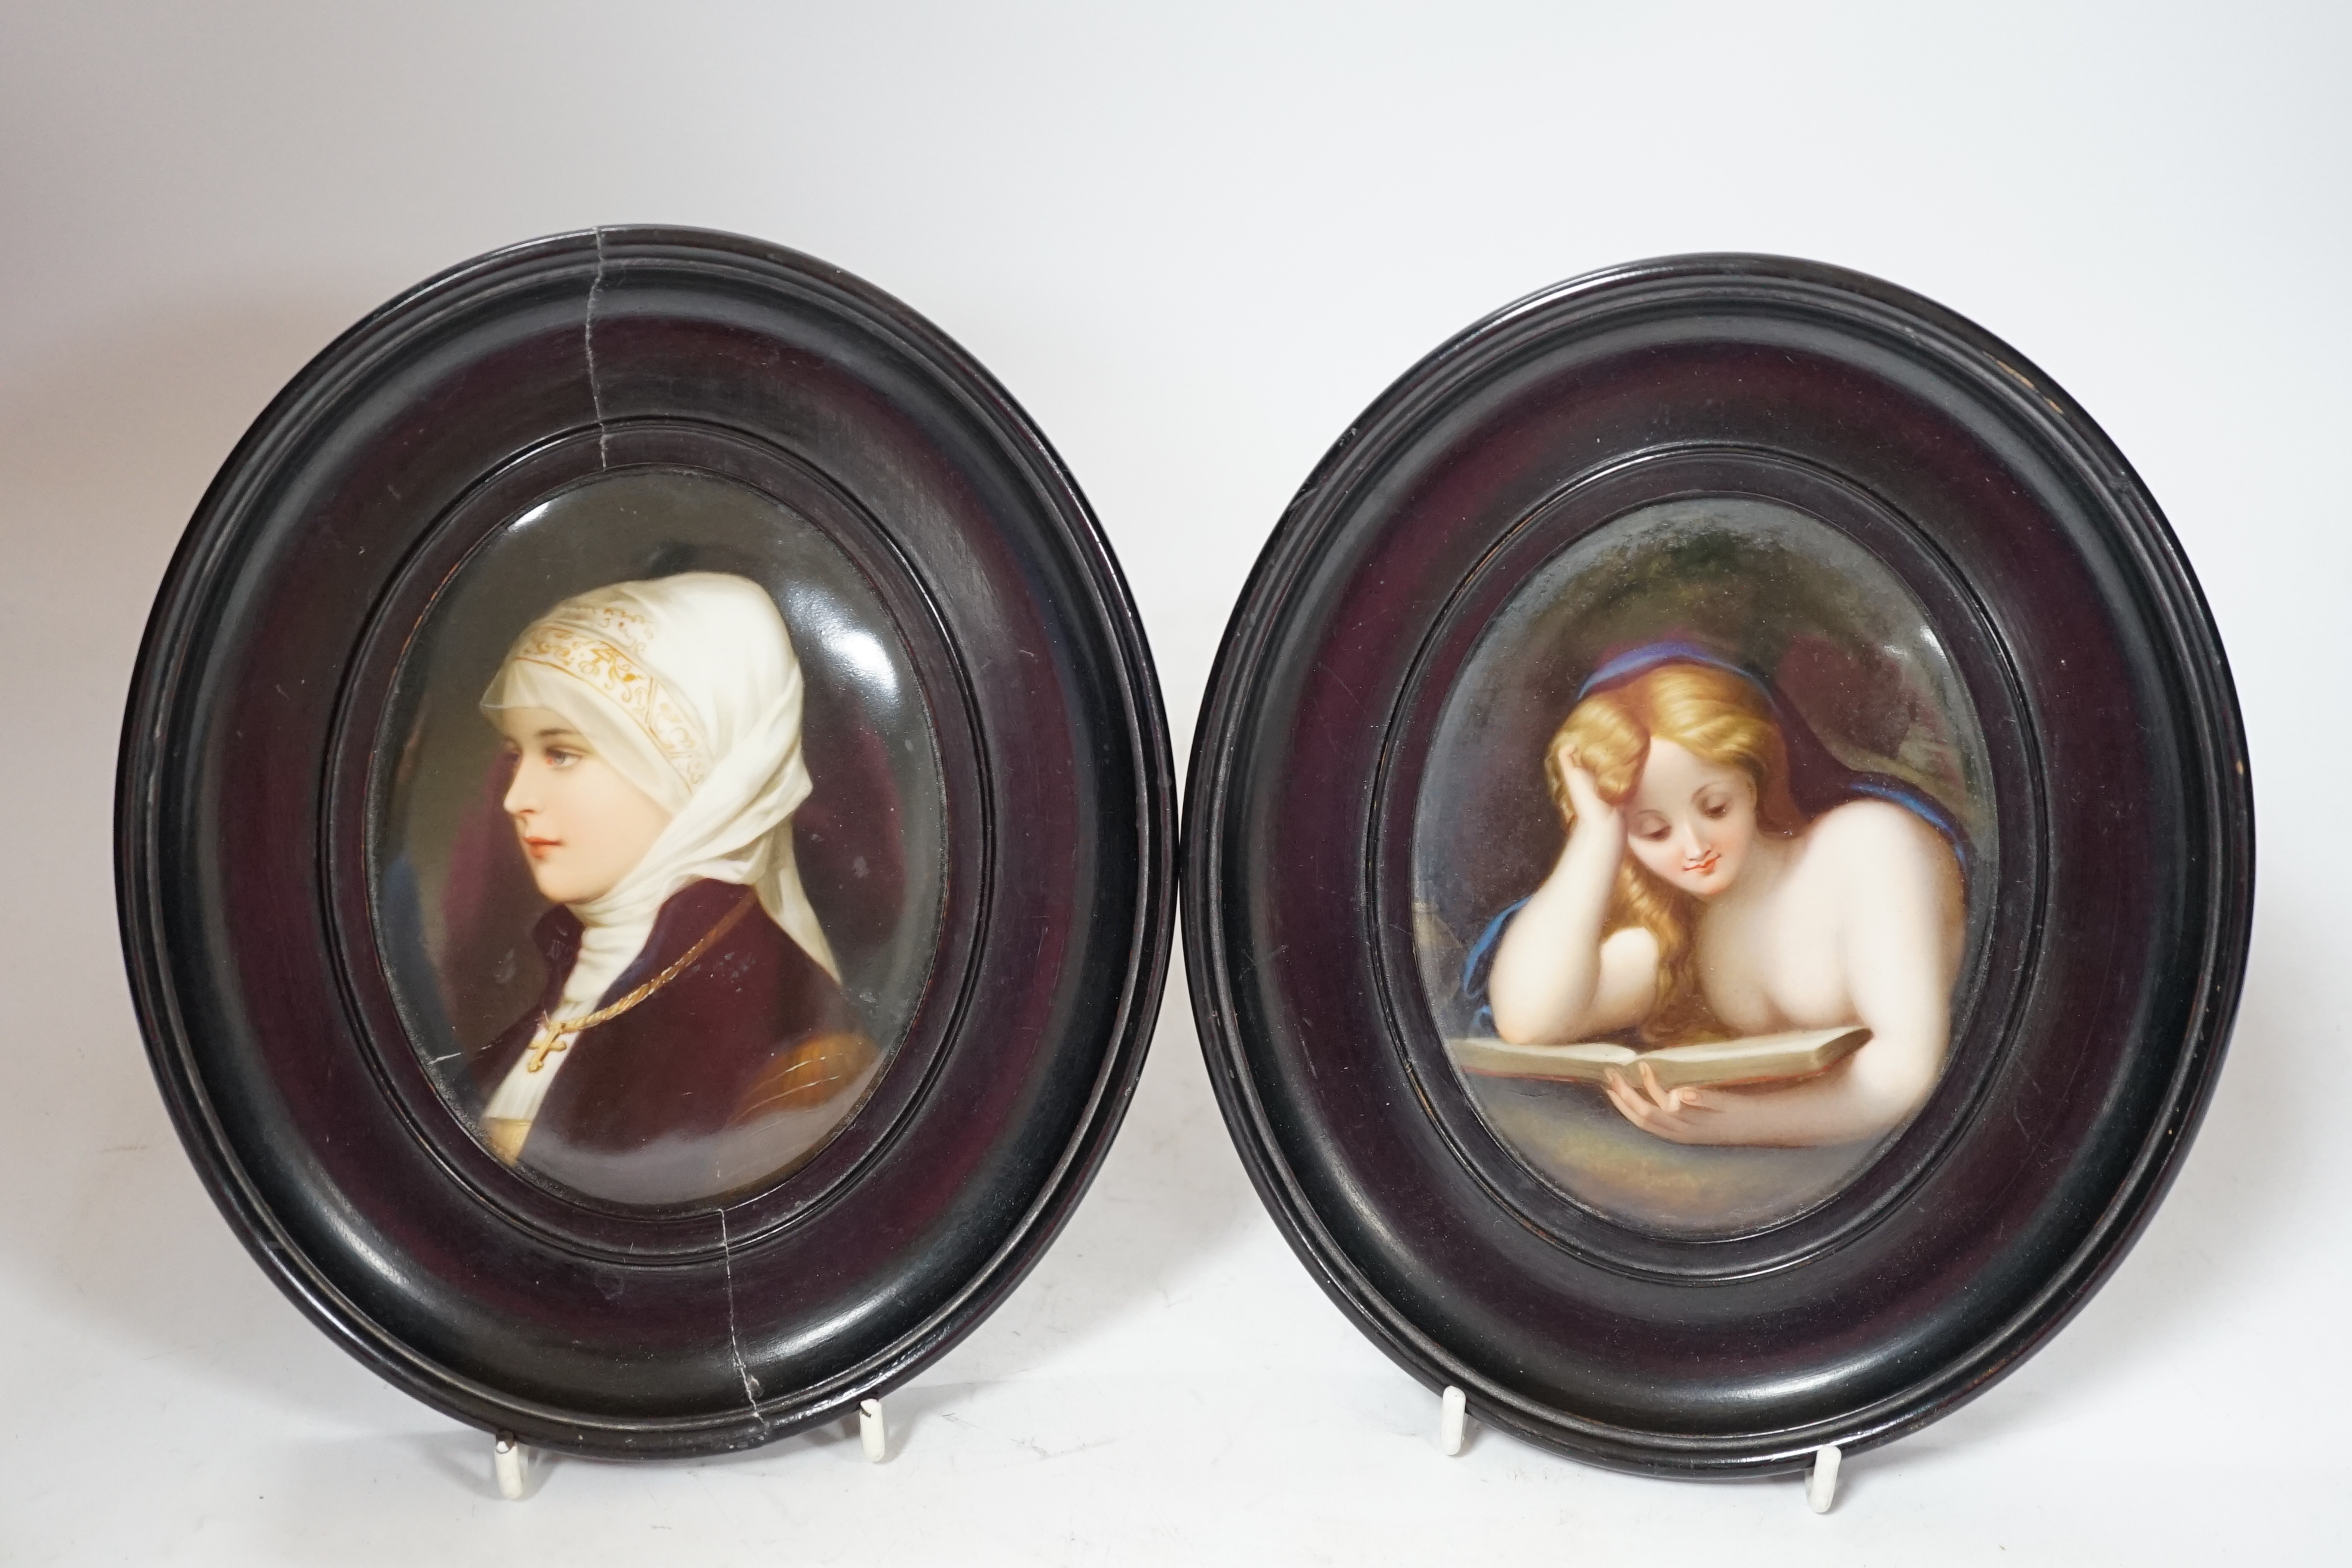 Two Paris porcelain oval portrait plaques, 20cm high